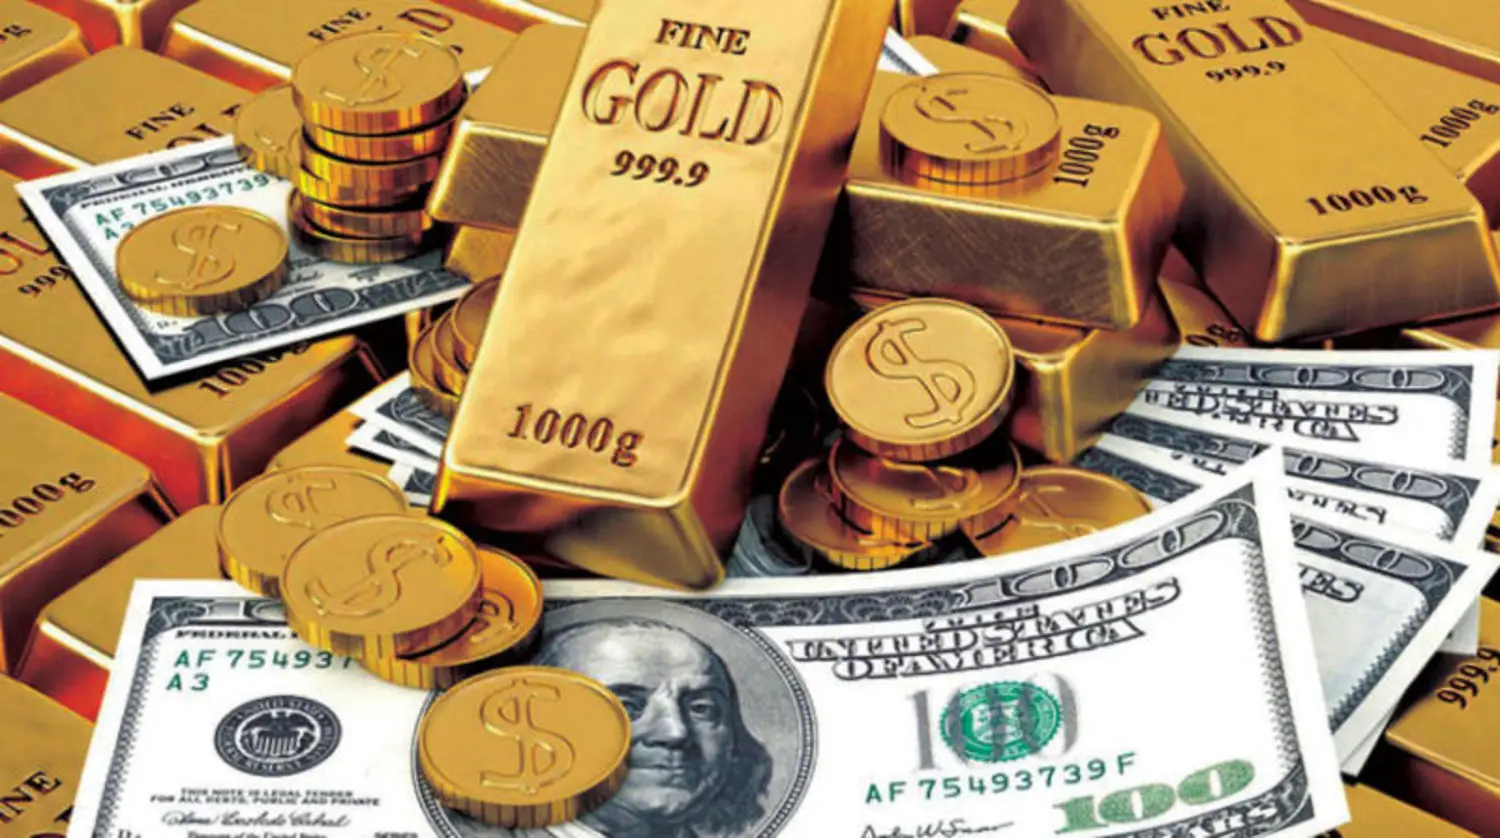 “اشتري شبكتك دلوقتي”..تعرف على أسعار الذهب اليوم الخميس 4 أبريل في مصر